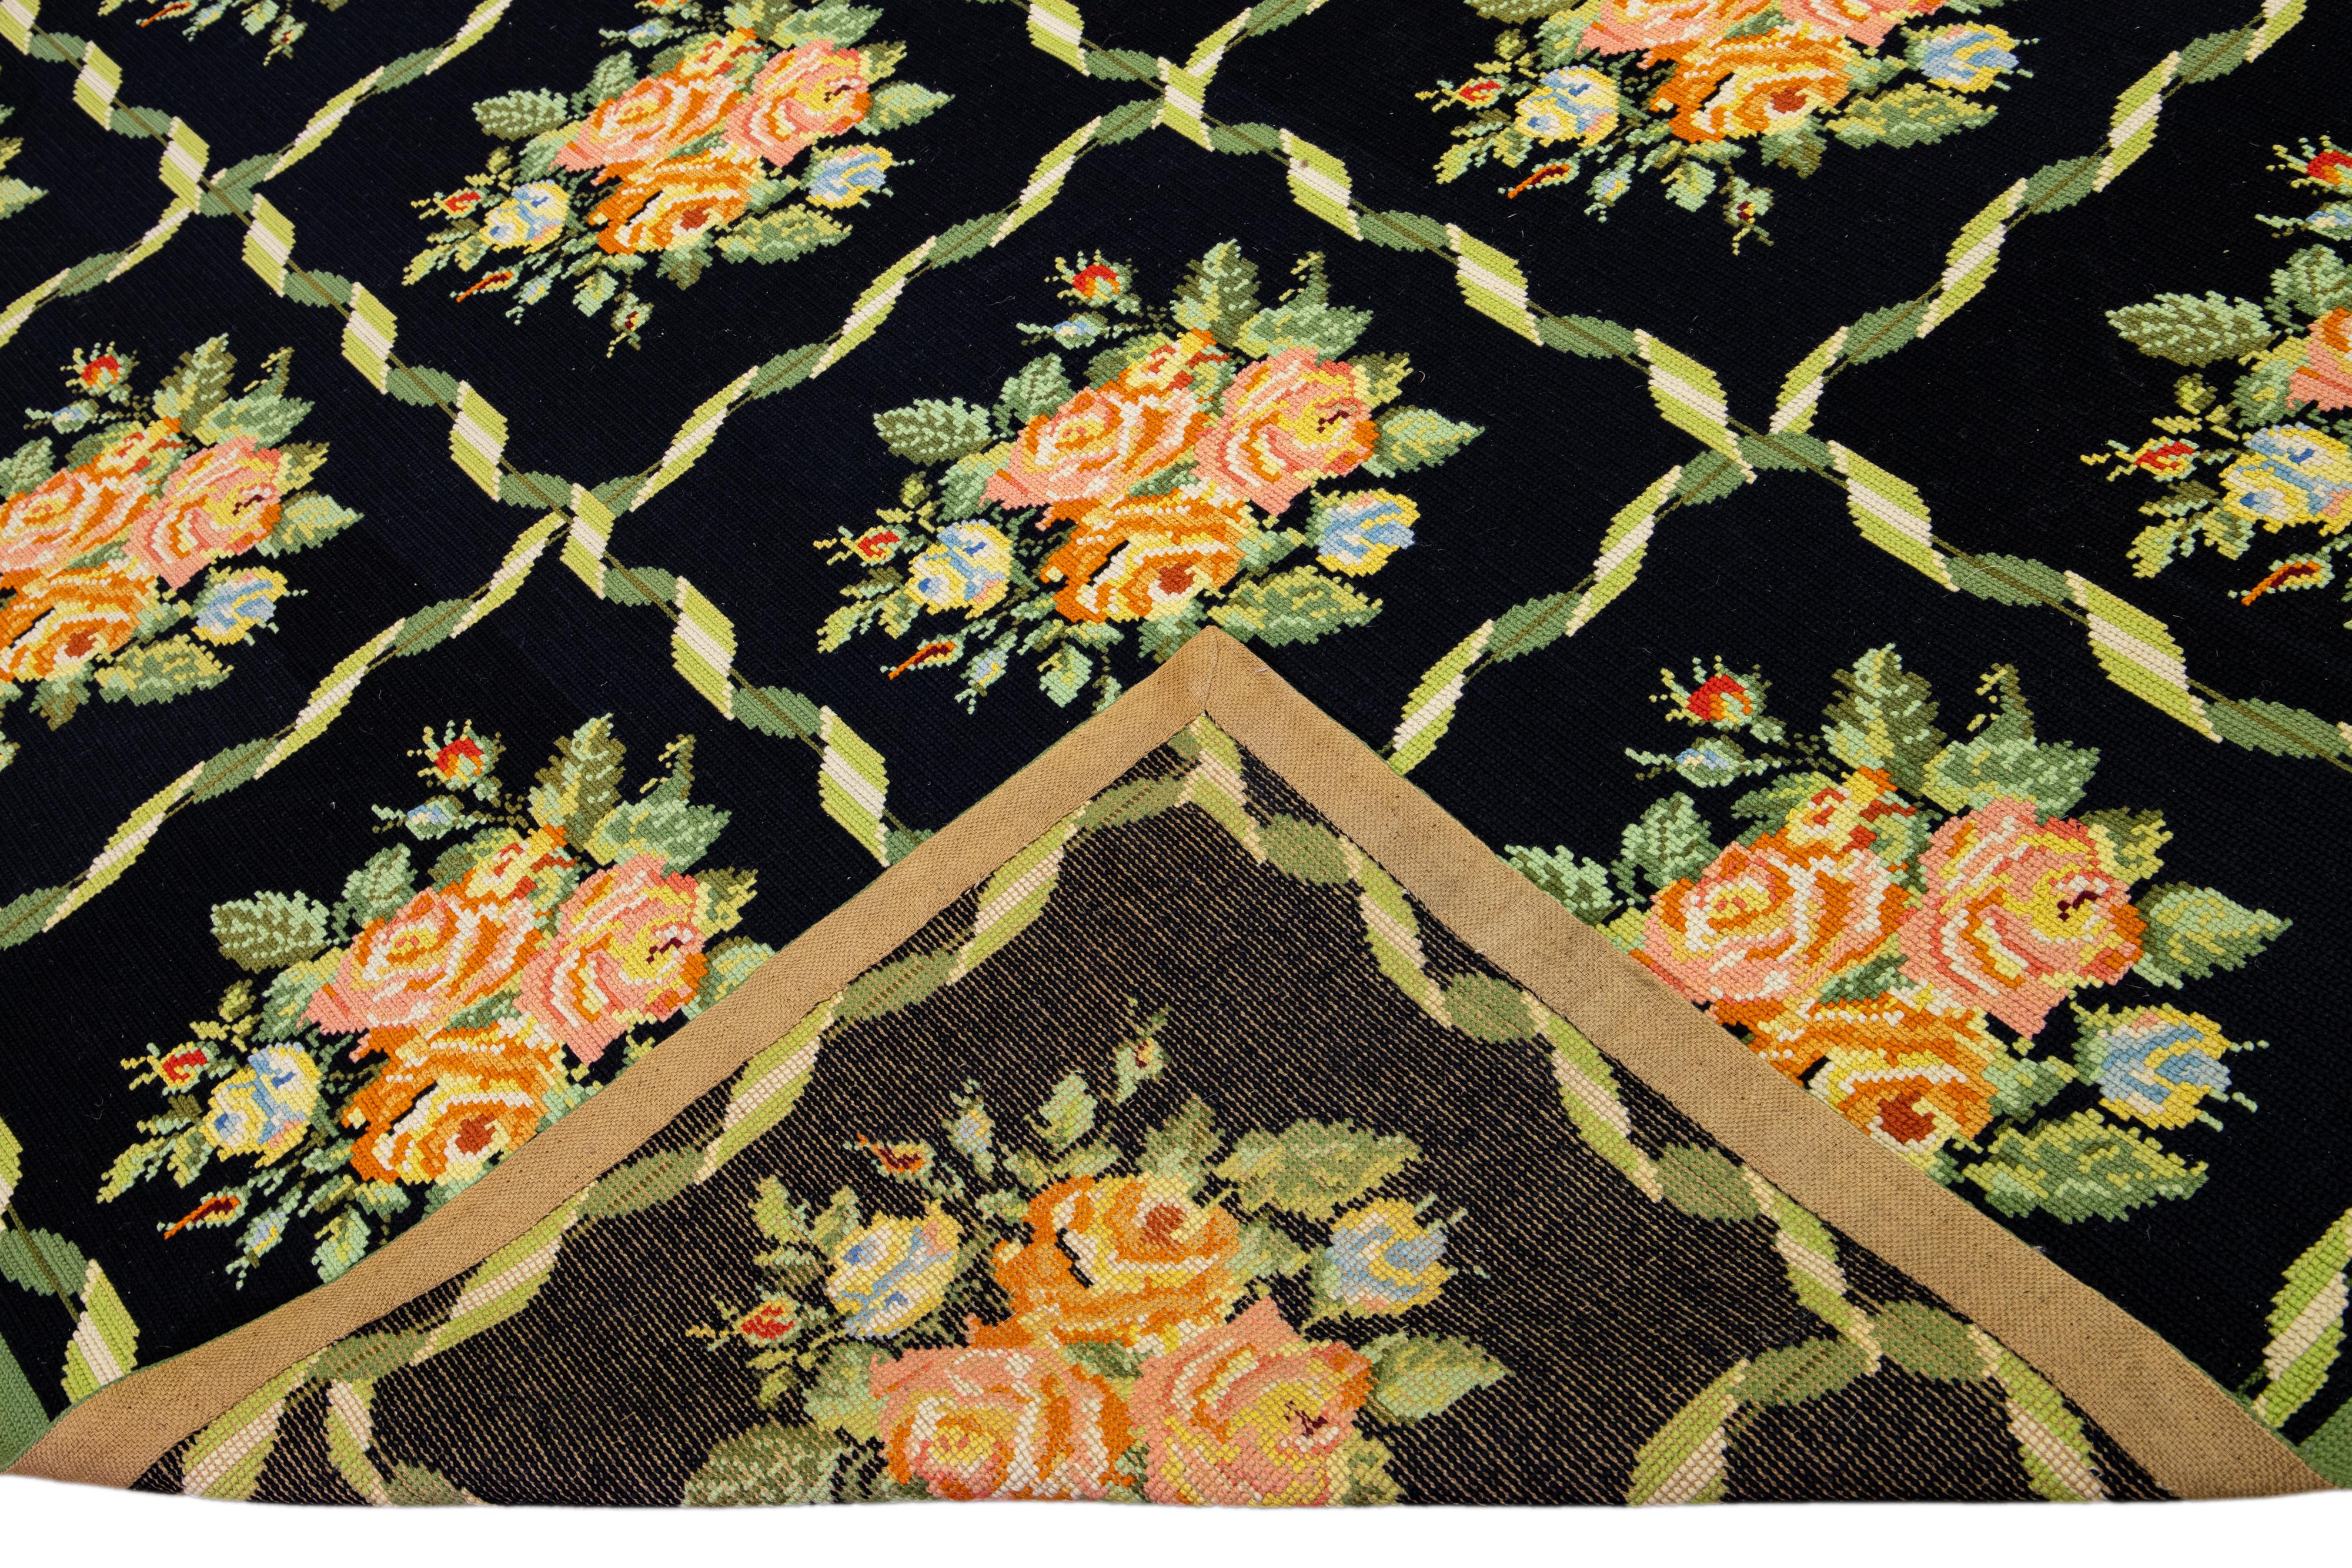 Schöner englischer Nadelspitze-Wollteppich im Vintage-Stil mit beigem Feld. Dieses Stück hat grüne feine Details mit einem floralen eleganten Muster im gesamten Design

Dieser Teppich misst 9' x 12'3